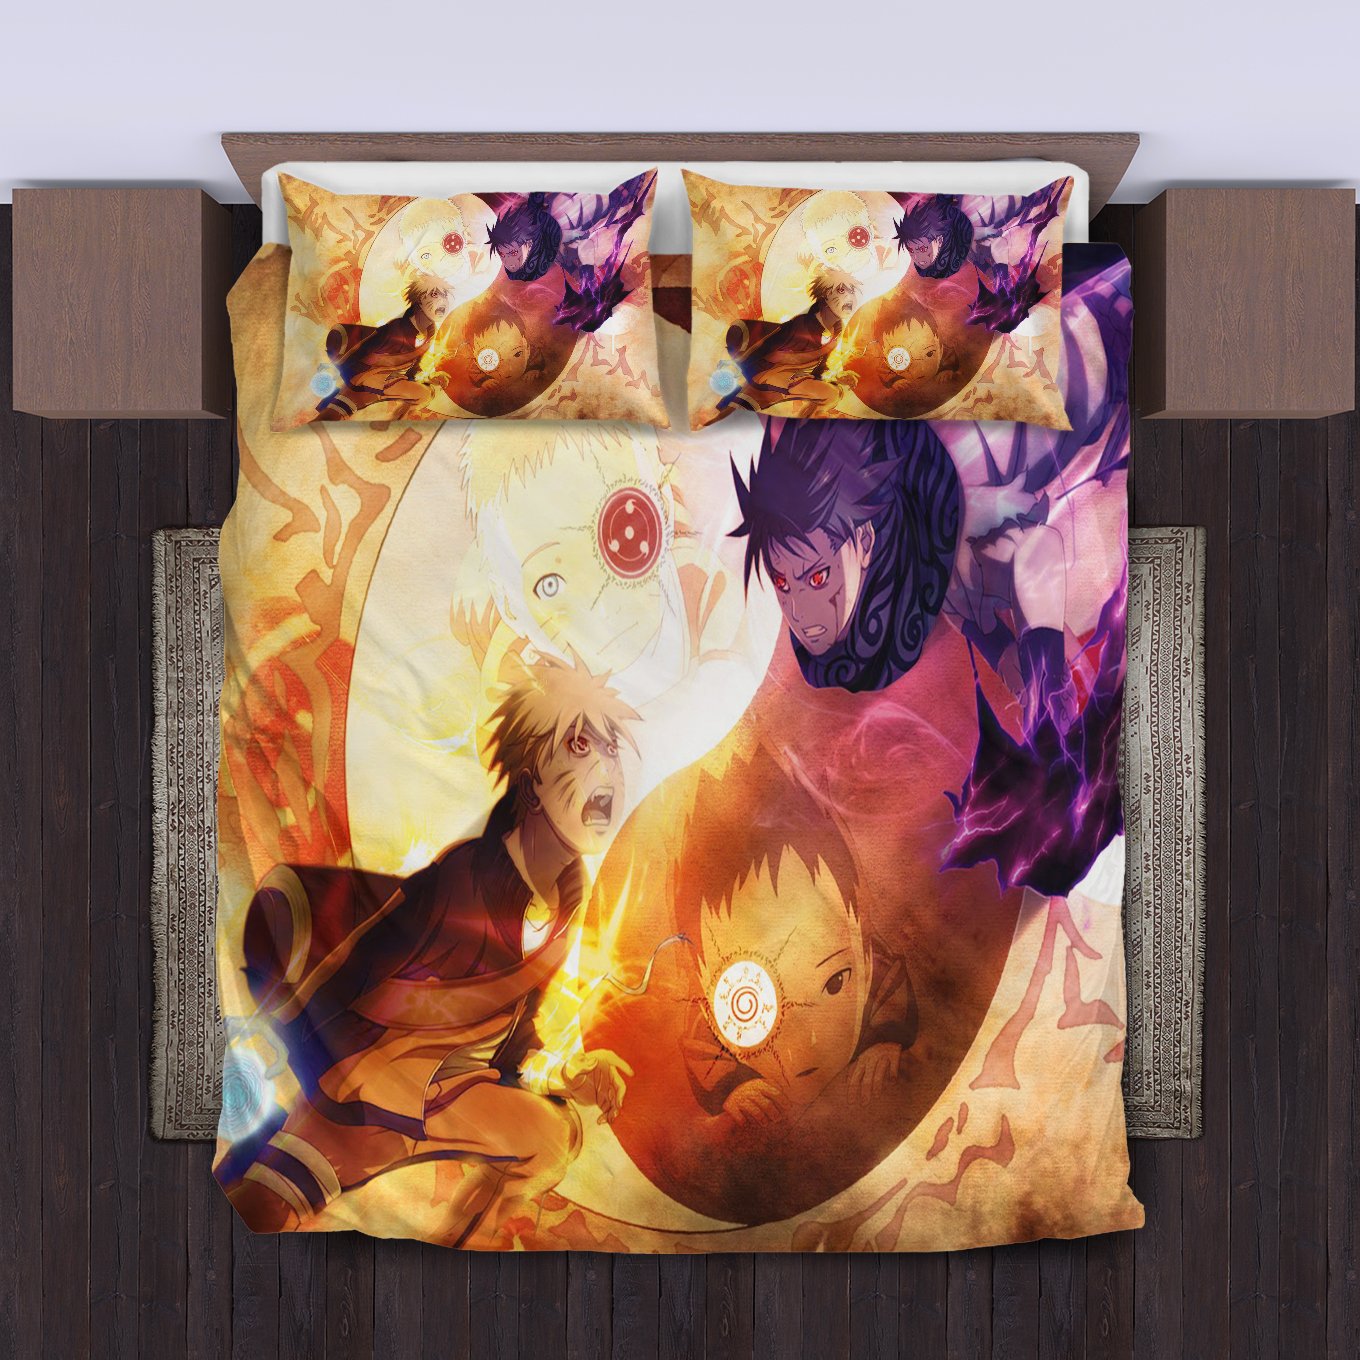 Naruto Vs Sasuke Bedding Set Duvet Cover And Pillowcase Set